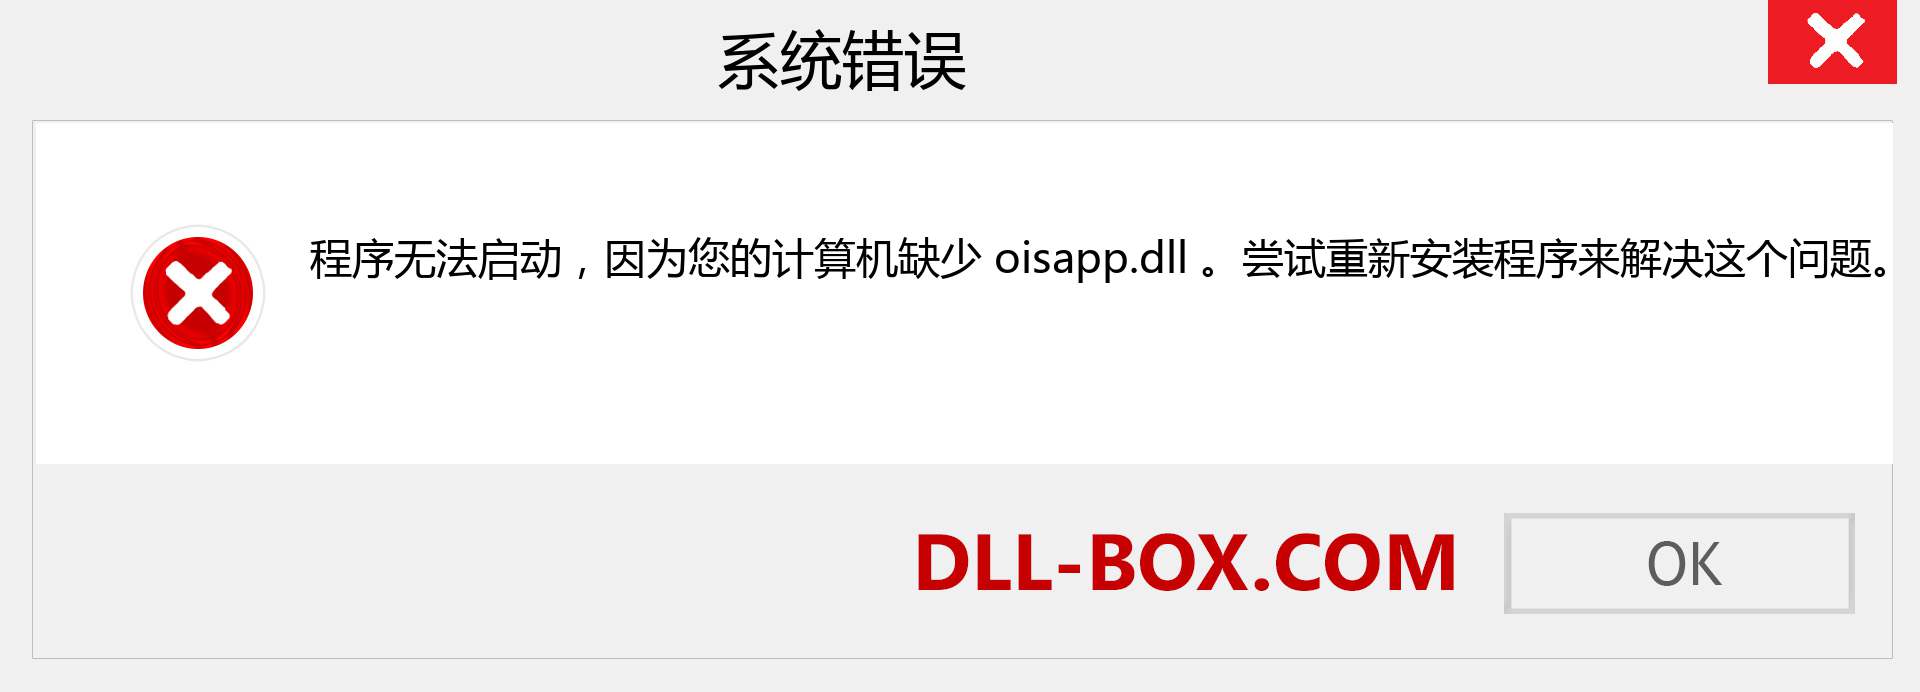 oisapp.dll 文件丢失？。 适用于 Windows 7、8、10 的下载 - 修复 Windows、照片、图像上的 oisapp dll 丢失错误